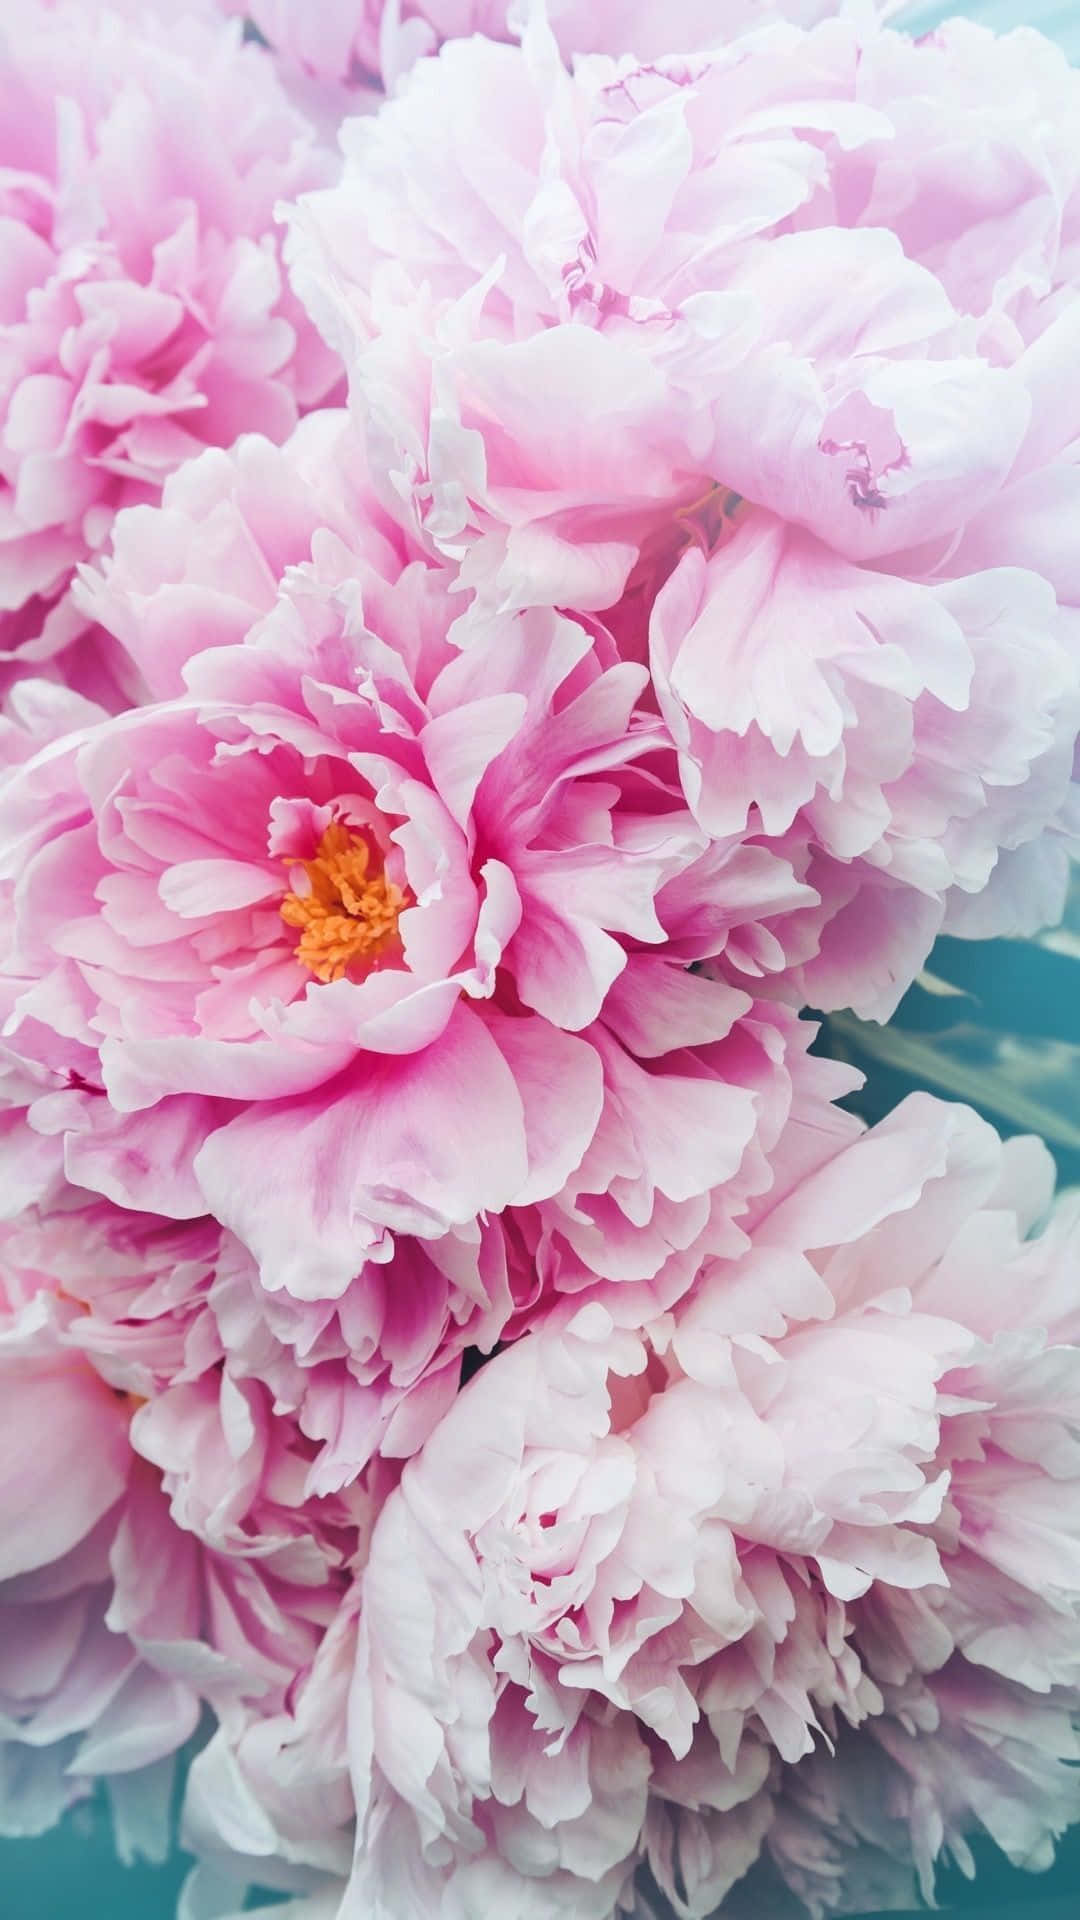 Einewunderschöne Pfingstrose In Voller Blüte Auf Einem Iphone Wallpaper